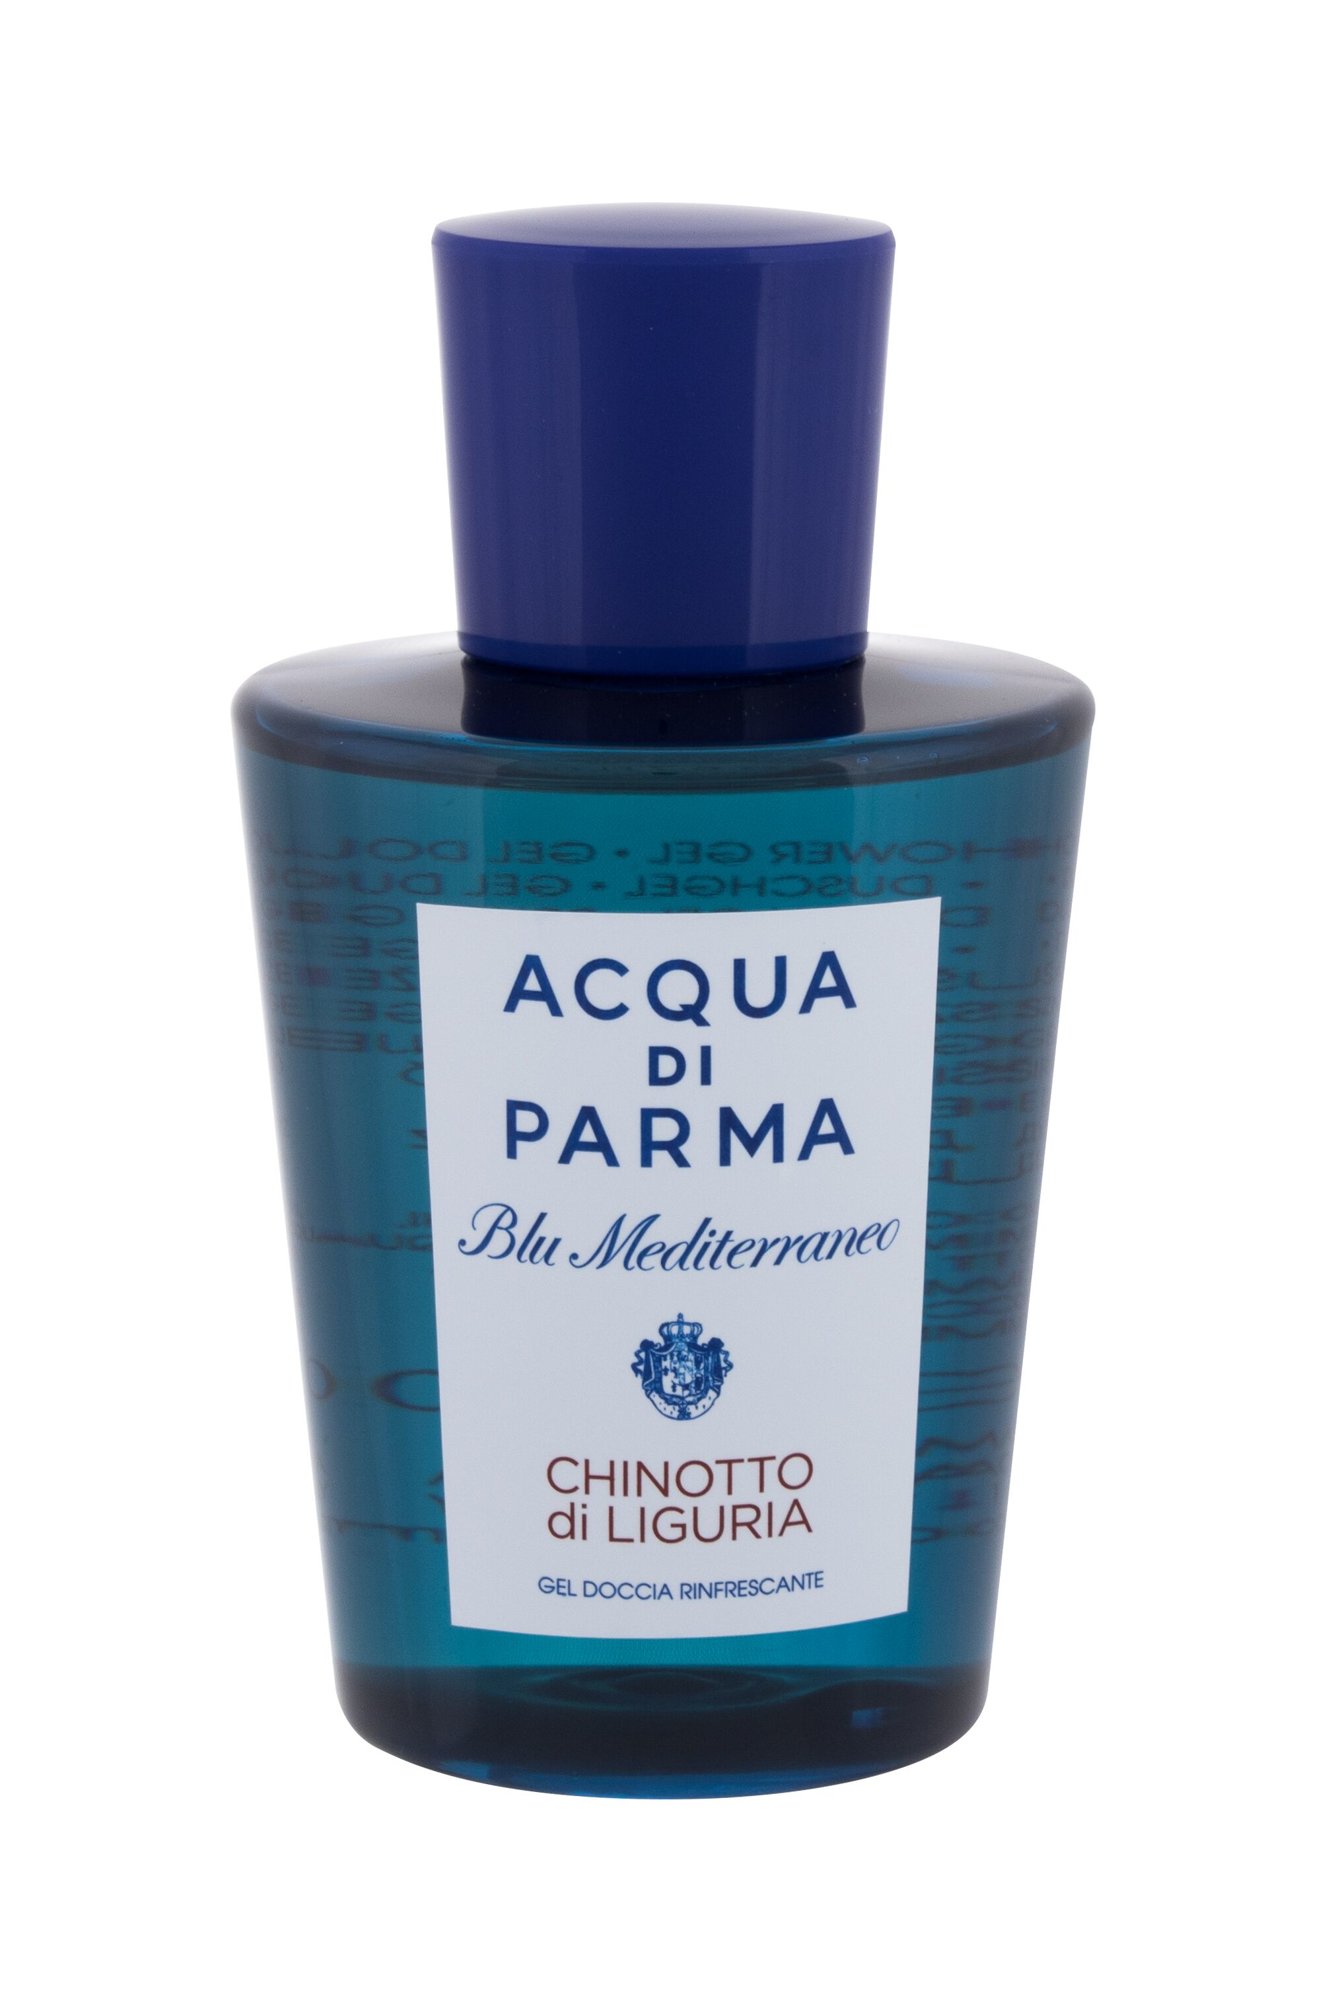 Acqua Di Parma Blu Mediterraneo Chinotto di Liguria NIŠINIAI dušo želė